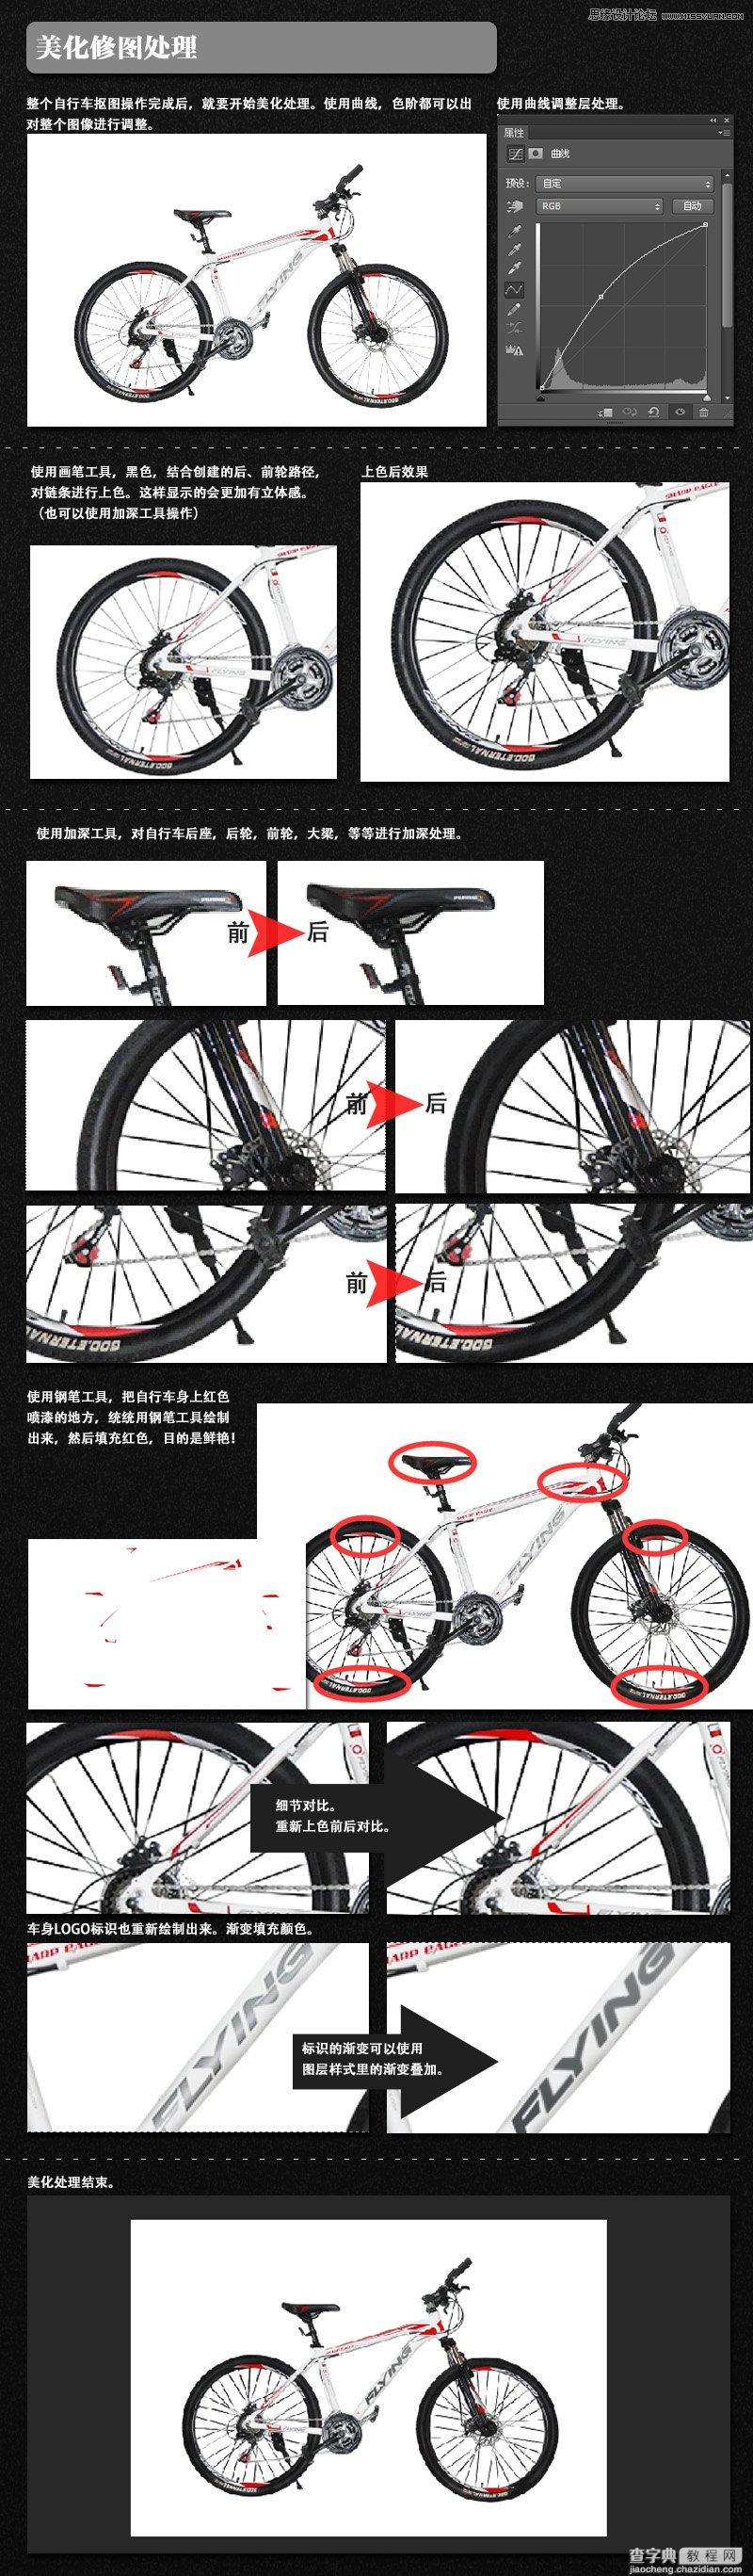 详细解析电商自行车产品Photoshop修图过程2